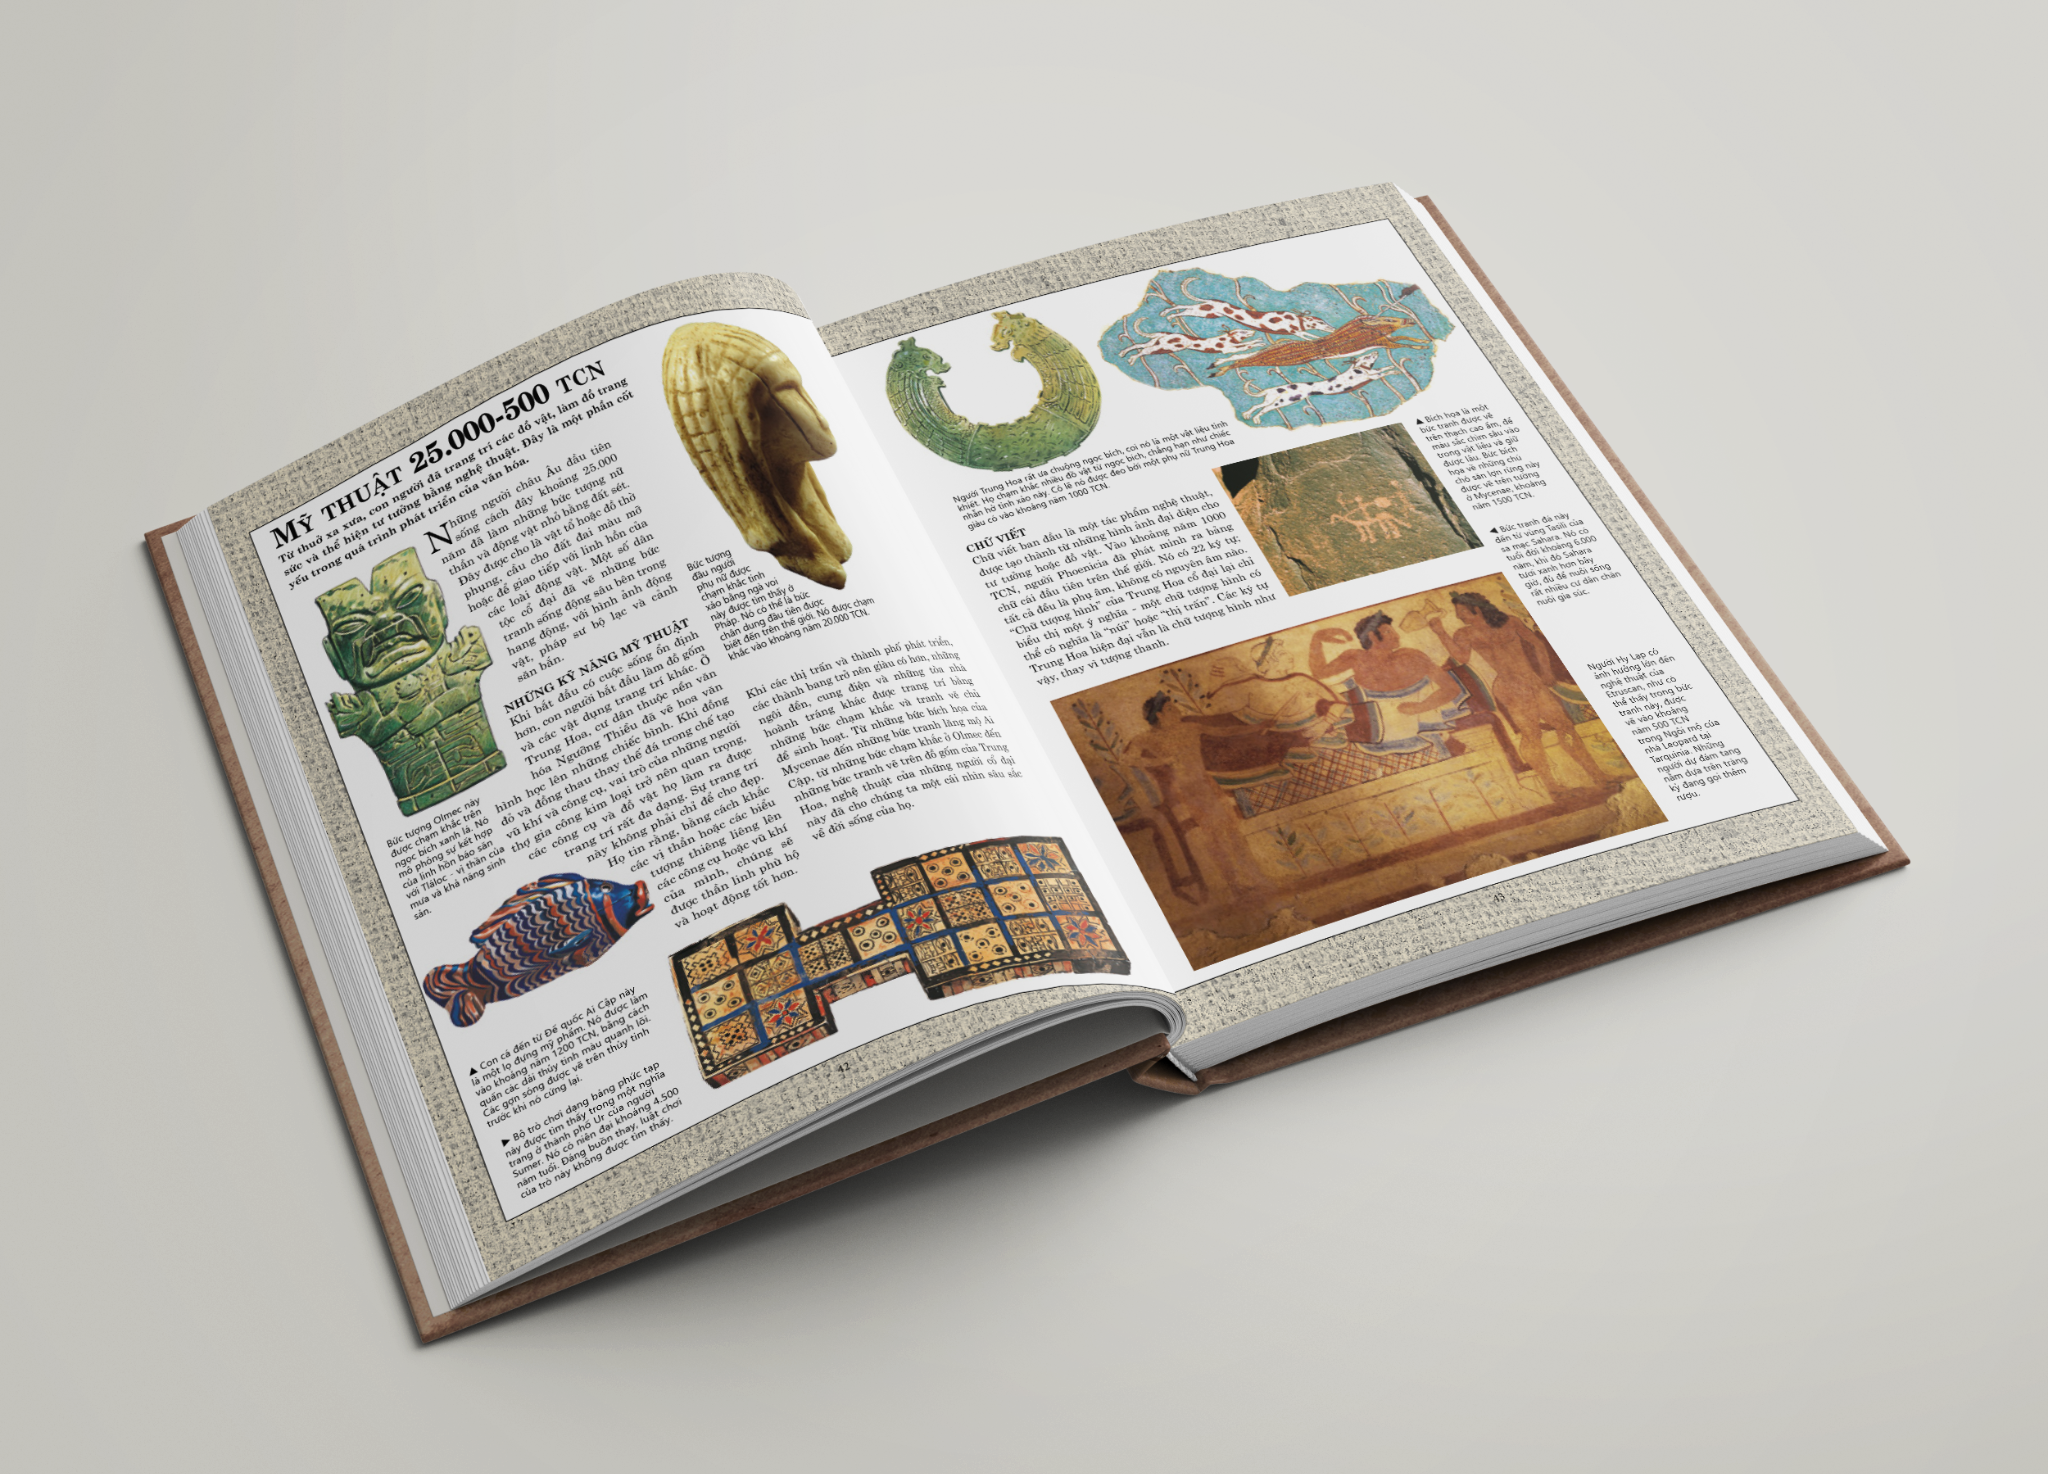 Bộ Sách Bách Khoa Toàn Thư Lịch Sử, Tập 1, Tập 2, Tổng hợp kiến thức lịch sử từ thời cổ đại đến thế giới hiện đại